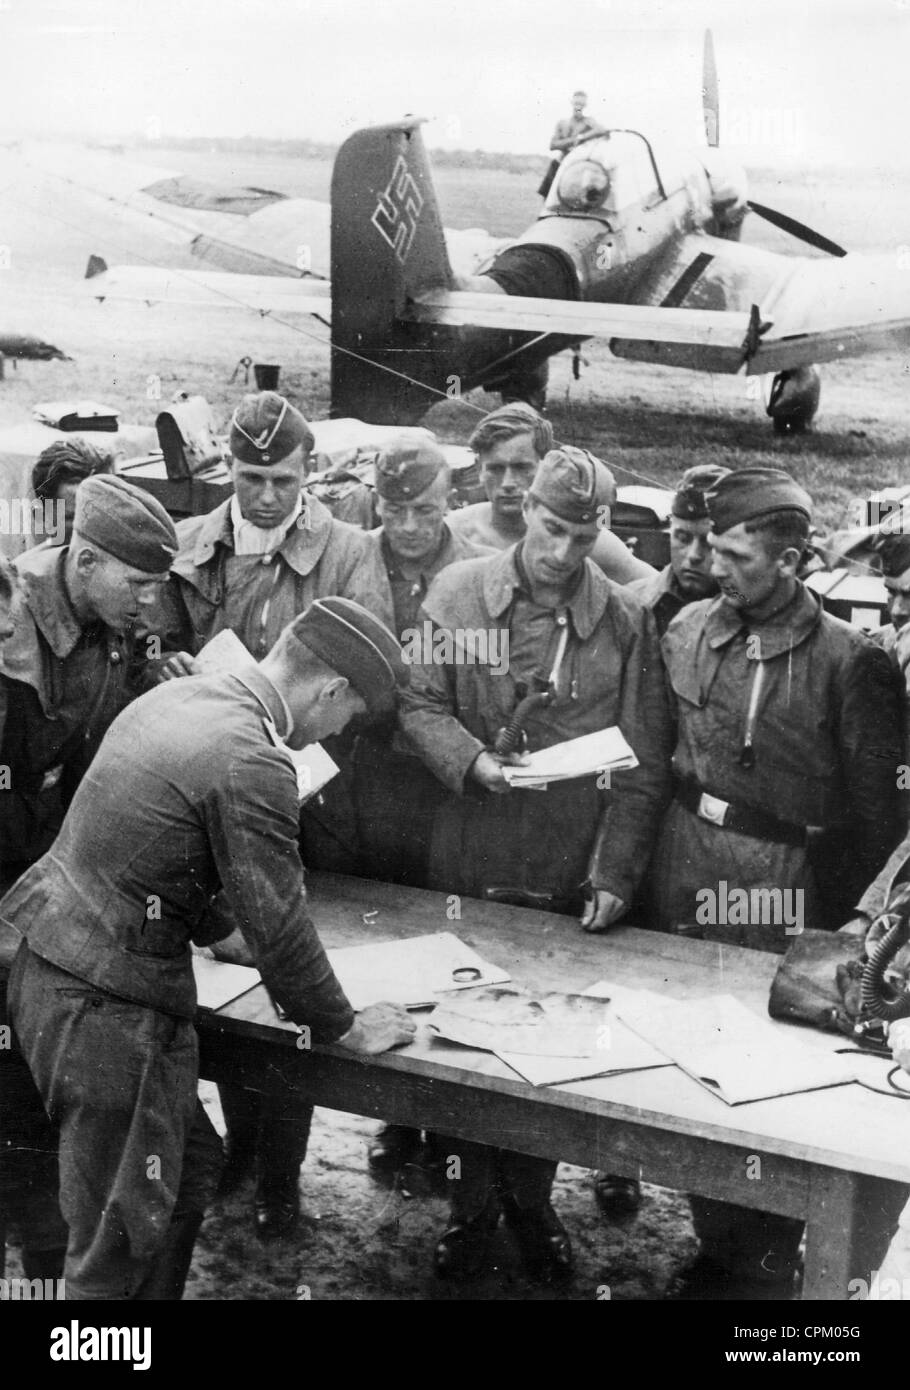 Les pilotes reçoivent les dernières instructions avant le début de la bataille aérienne d'Angleterre, 1940 Banque D'Images